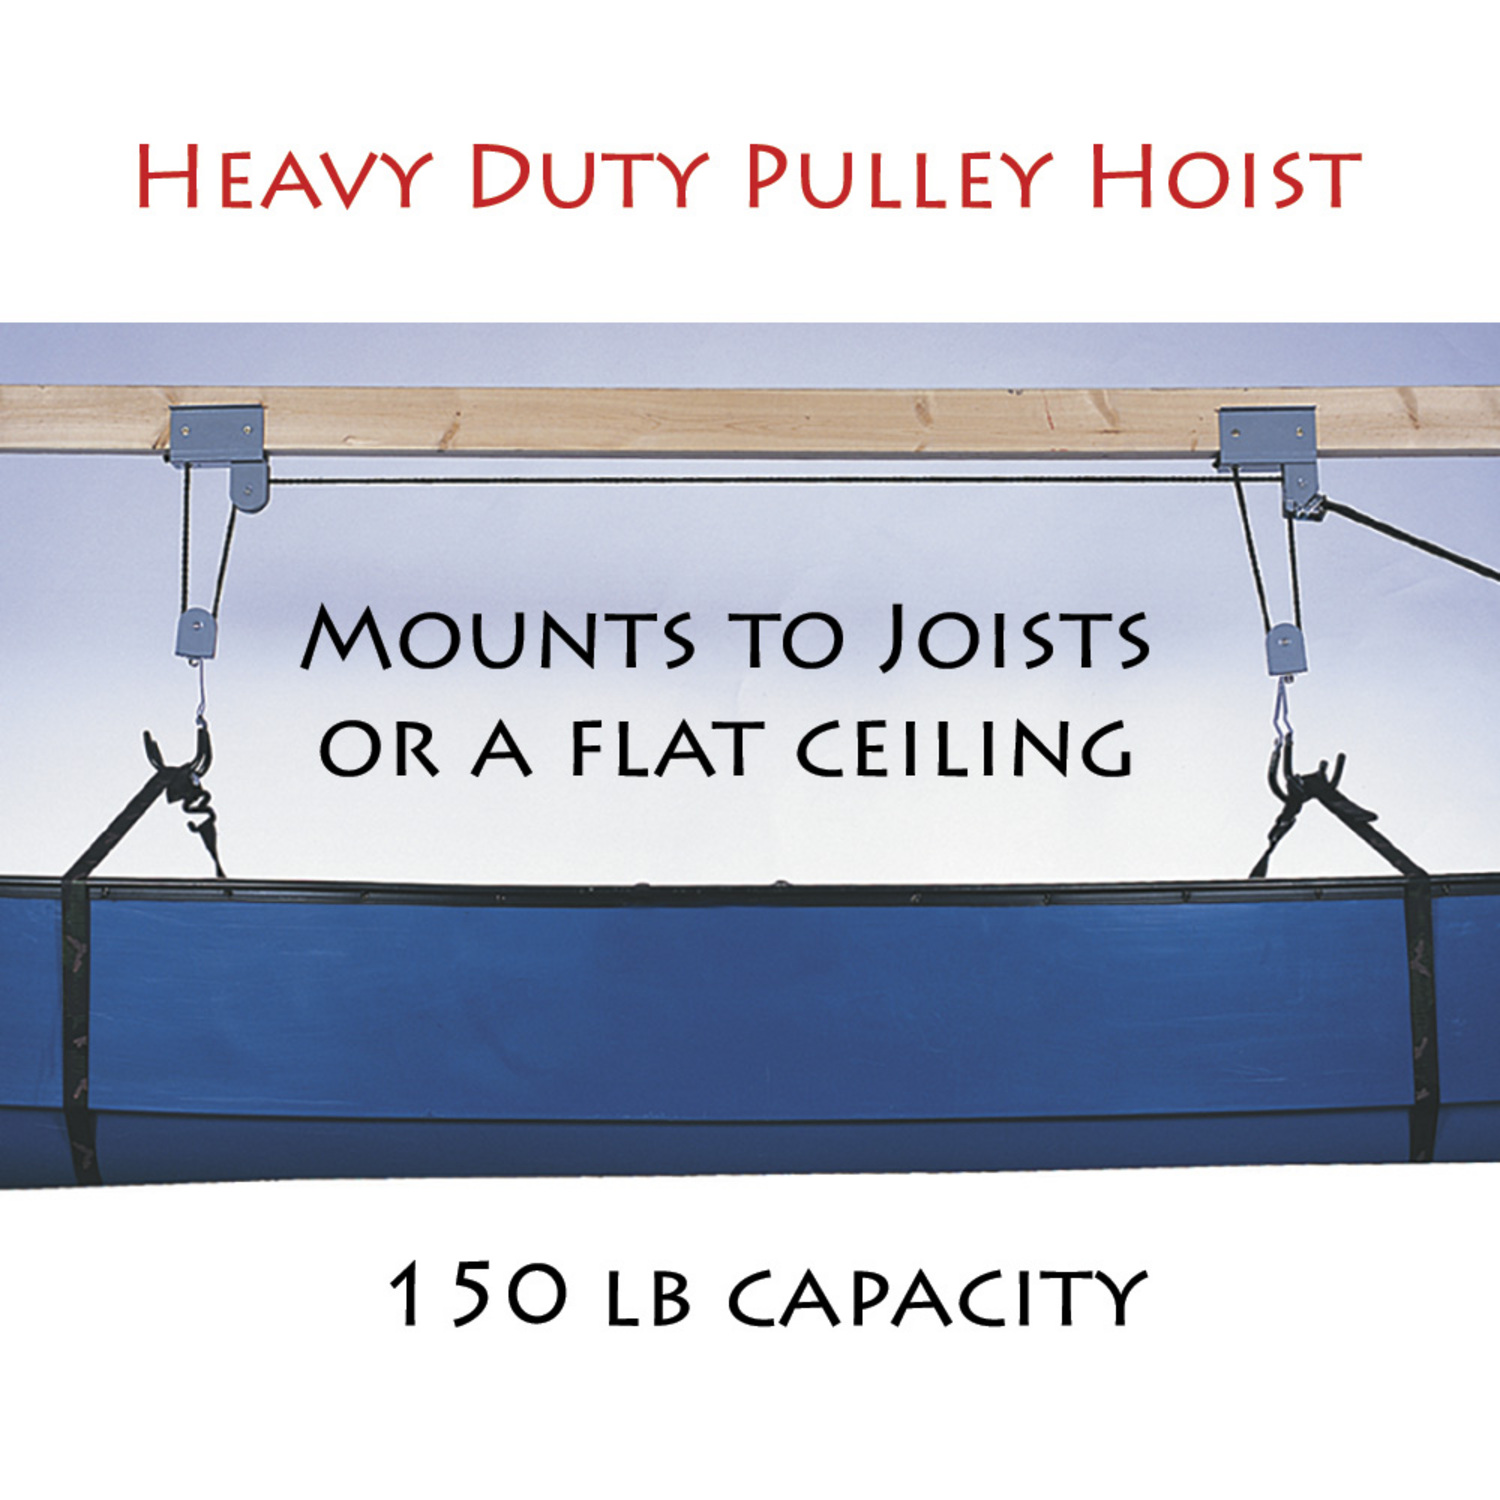 Home &gt; canoe gear &gt; canoe storage &gt; heavy duty pulley hoist (Item # 